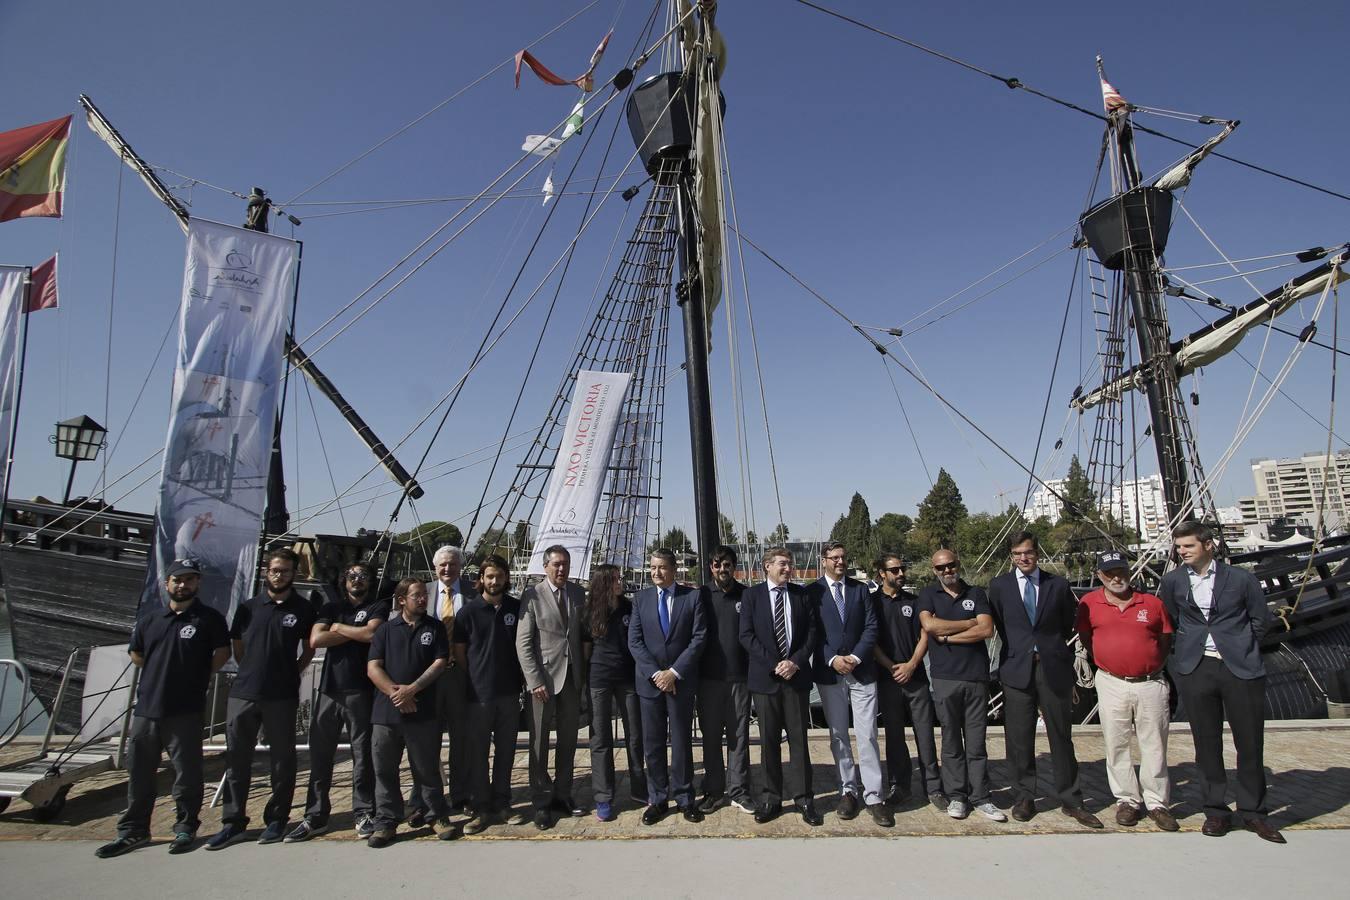 El alcalde inaugura el Festival Marítimo que conmemora el V centenario de la circunnavegación